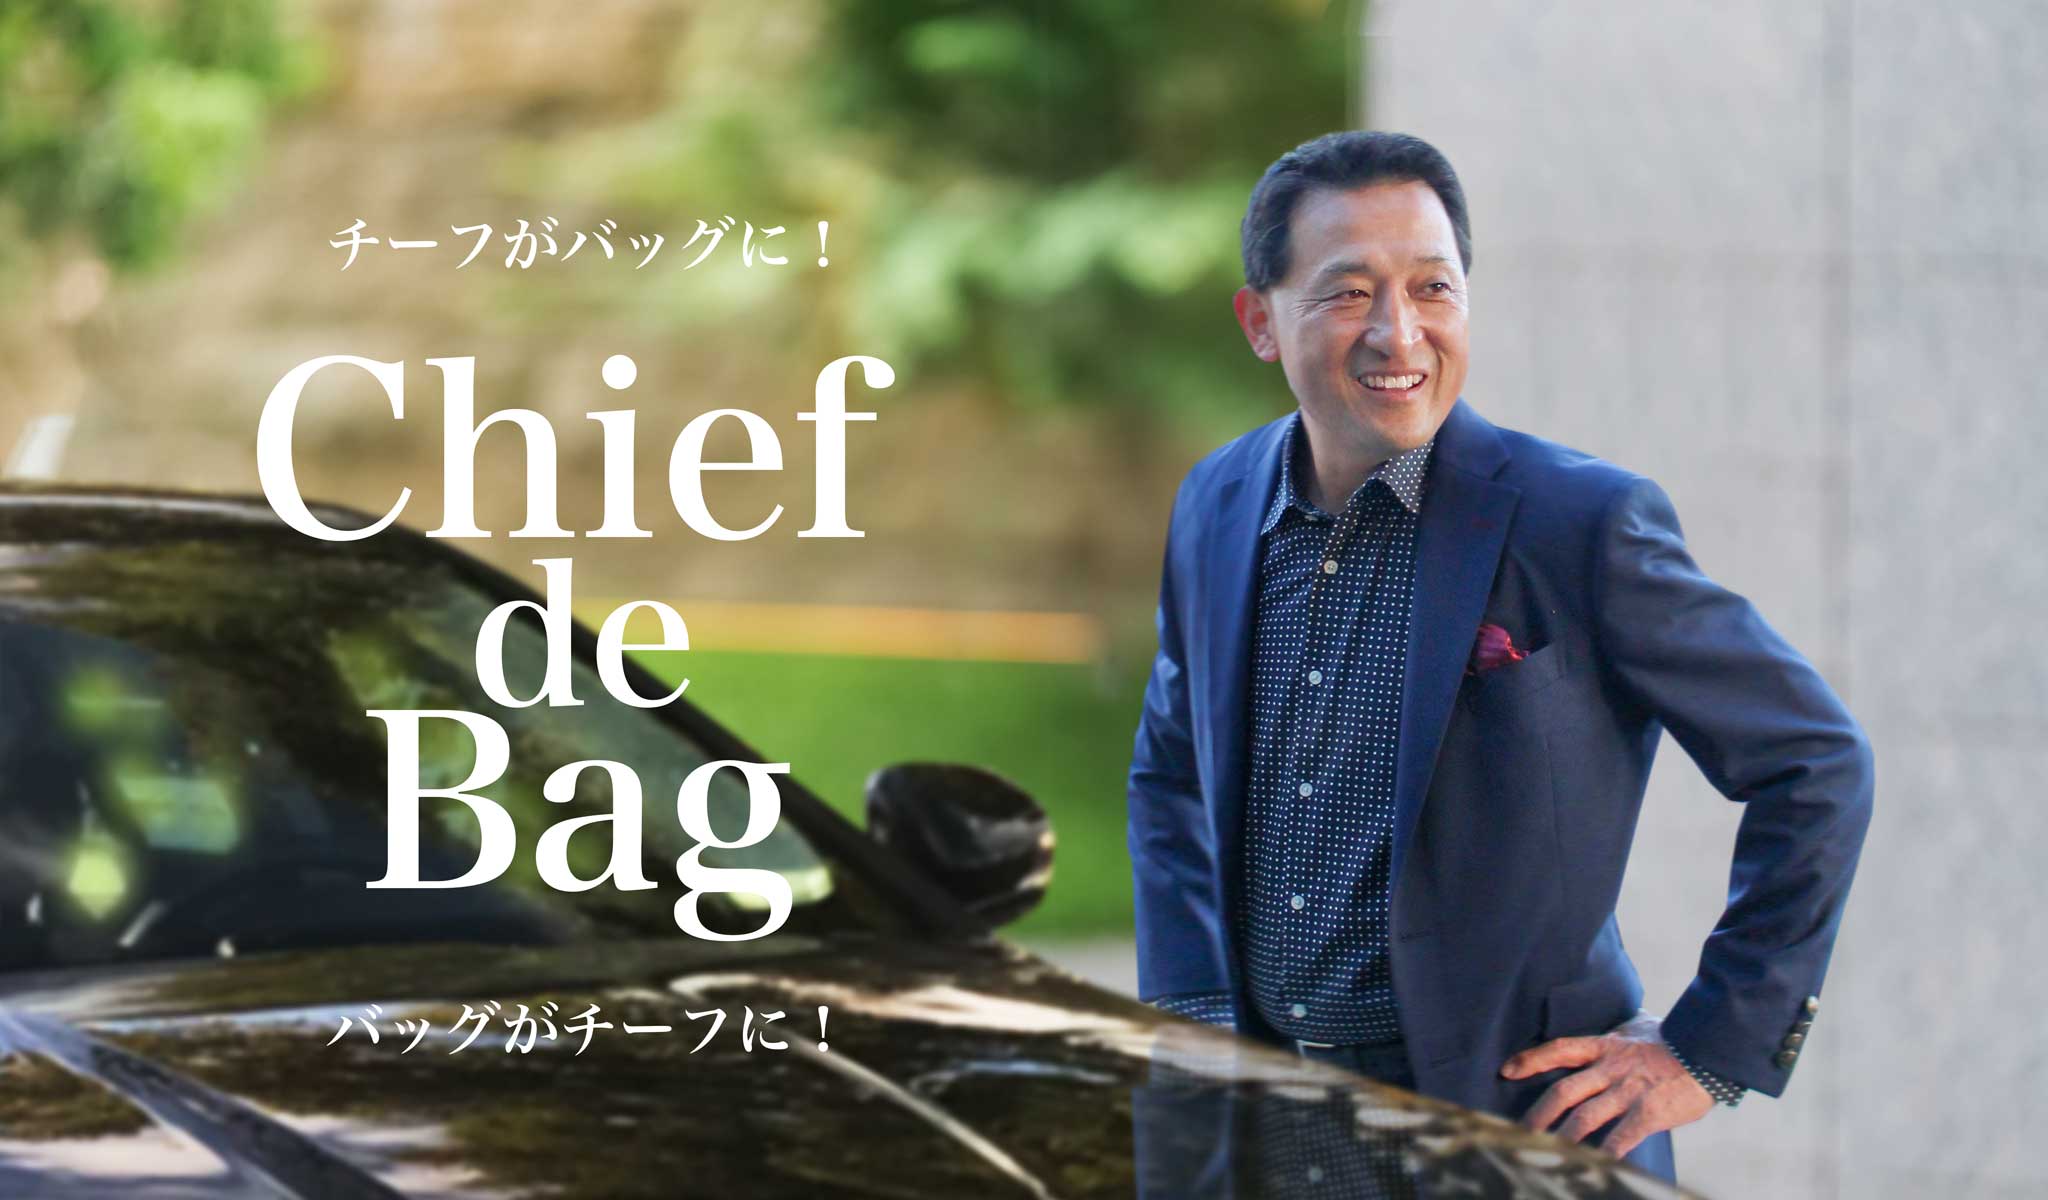 Chief de Bagのモデルは中村さん